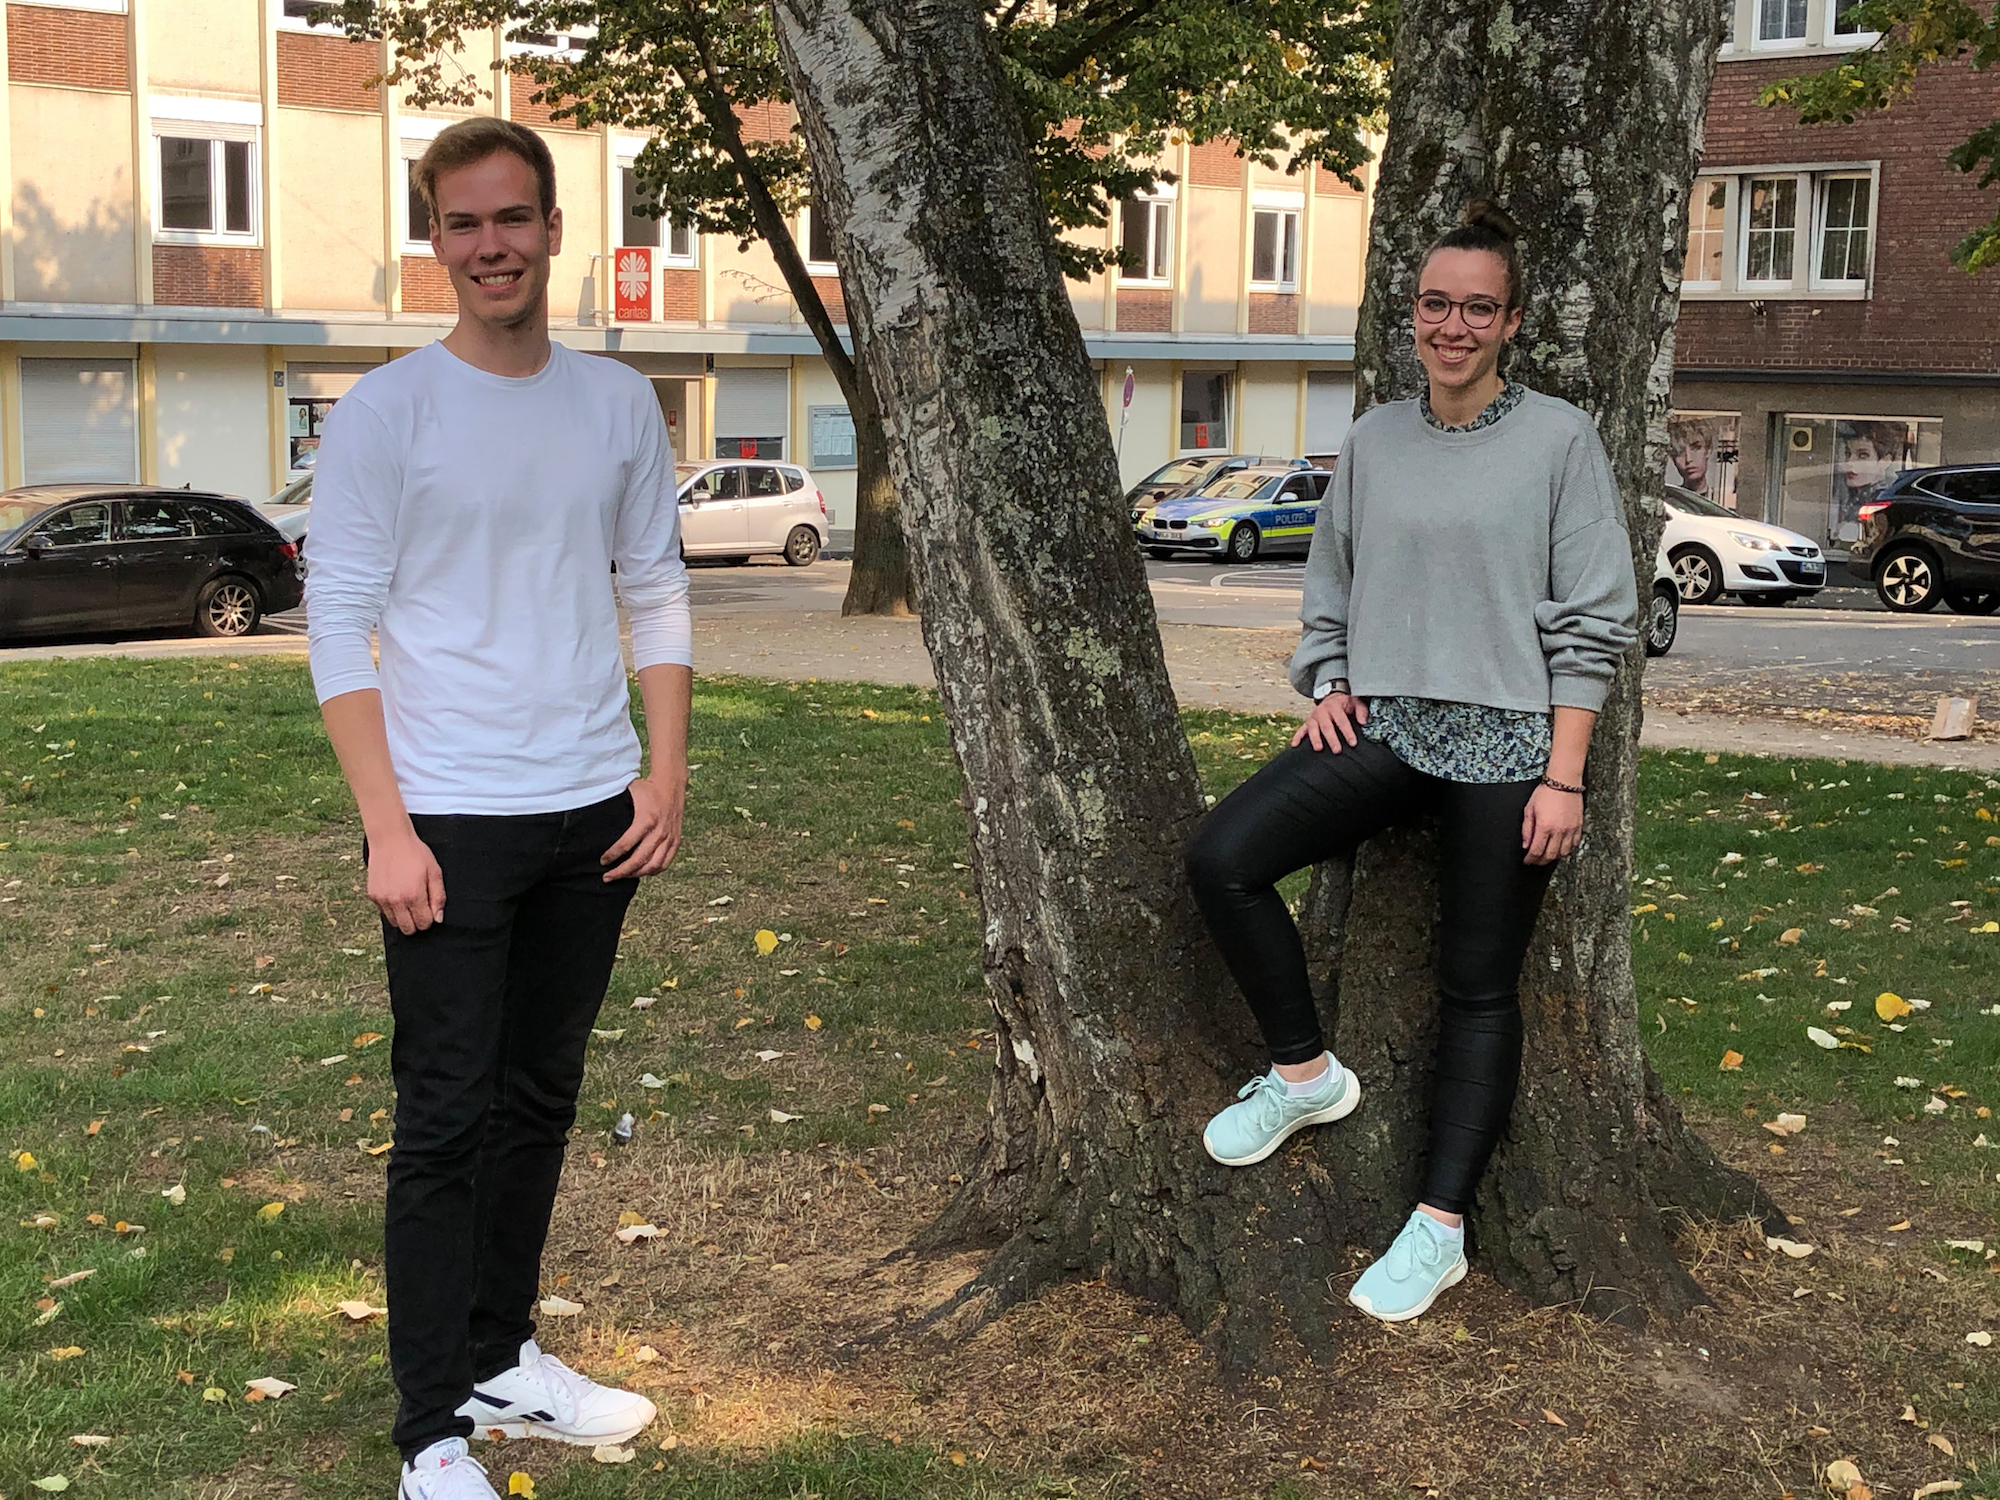 Noah Zachowksi und Annika Bettag bauen youngcaritas in Mönchengladbach auf. Sie sind Ansprechpartner für Jugendliche, die sich engagieren wollen. (c) Garnet Manecke